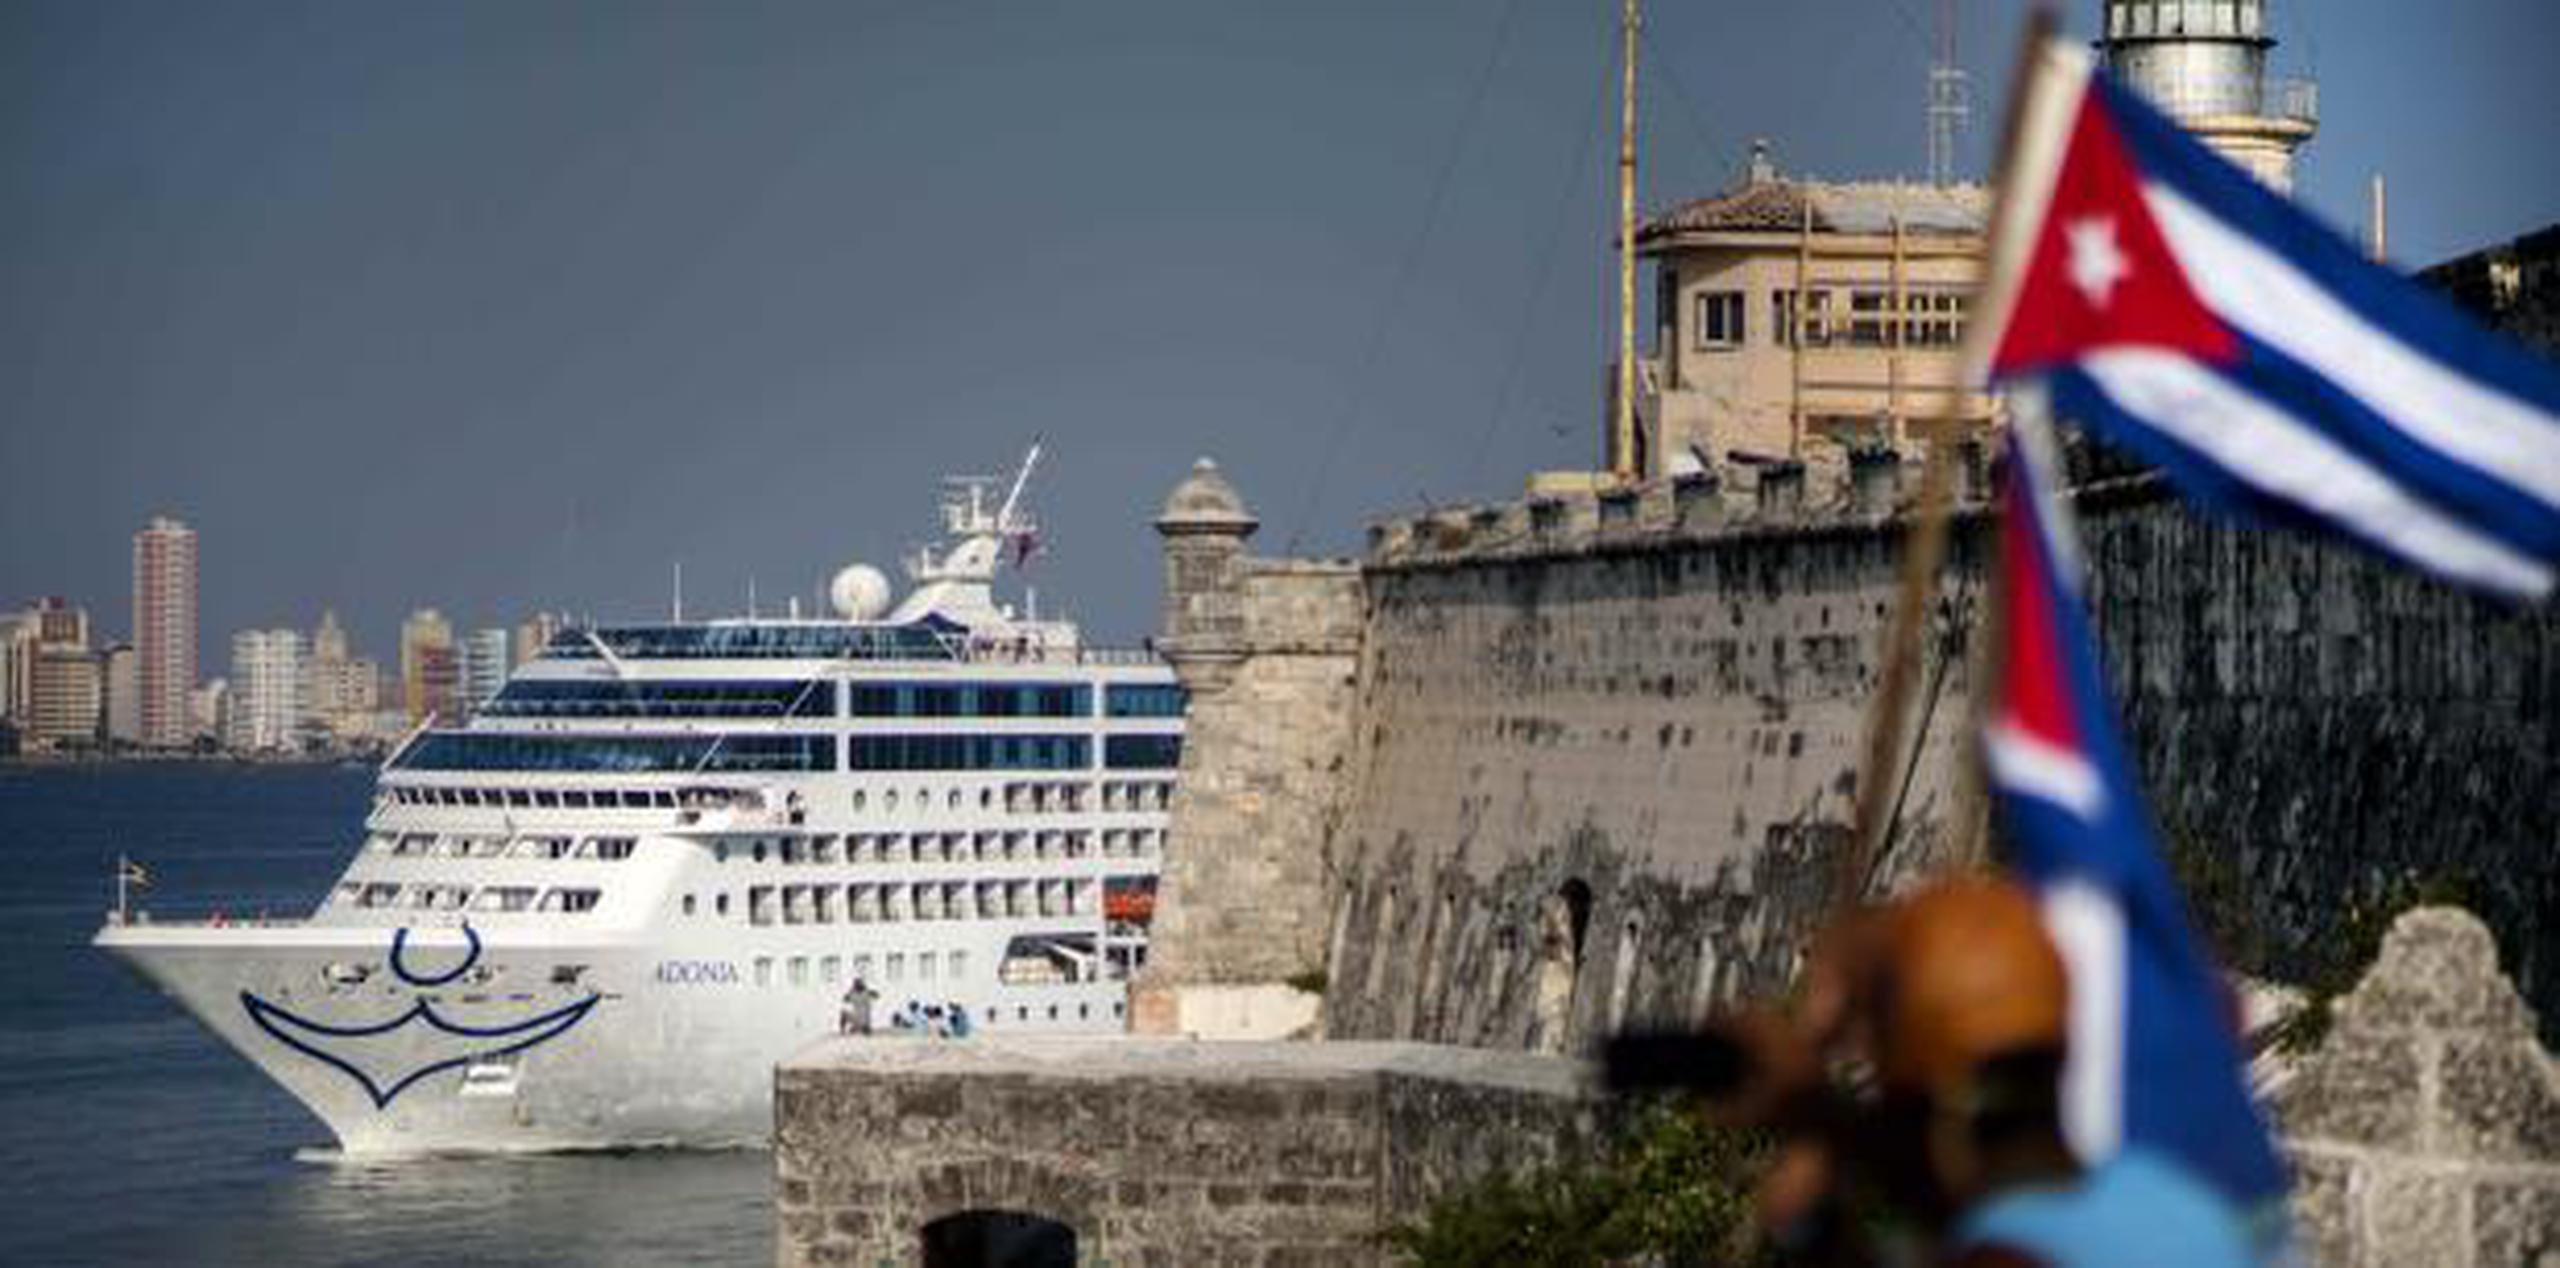 El primer crucero autorizado a viajar a Cuba desde Estados Unidos en más de 50 años fue el Adonia, de Fathom, una filial de Carnival, el 1 de mayo de 2016. (Archivo)